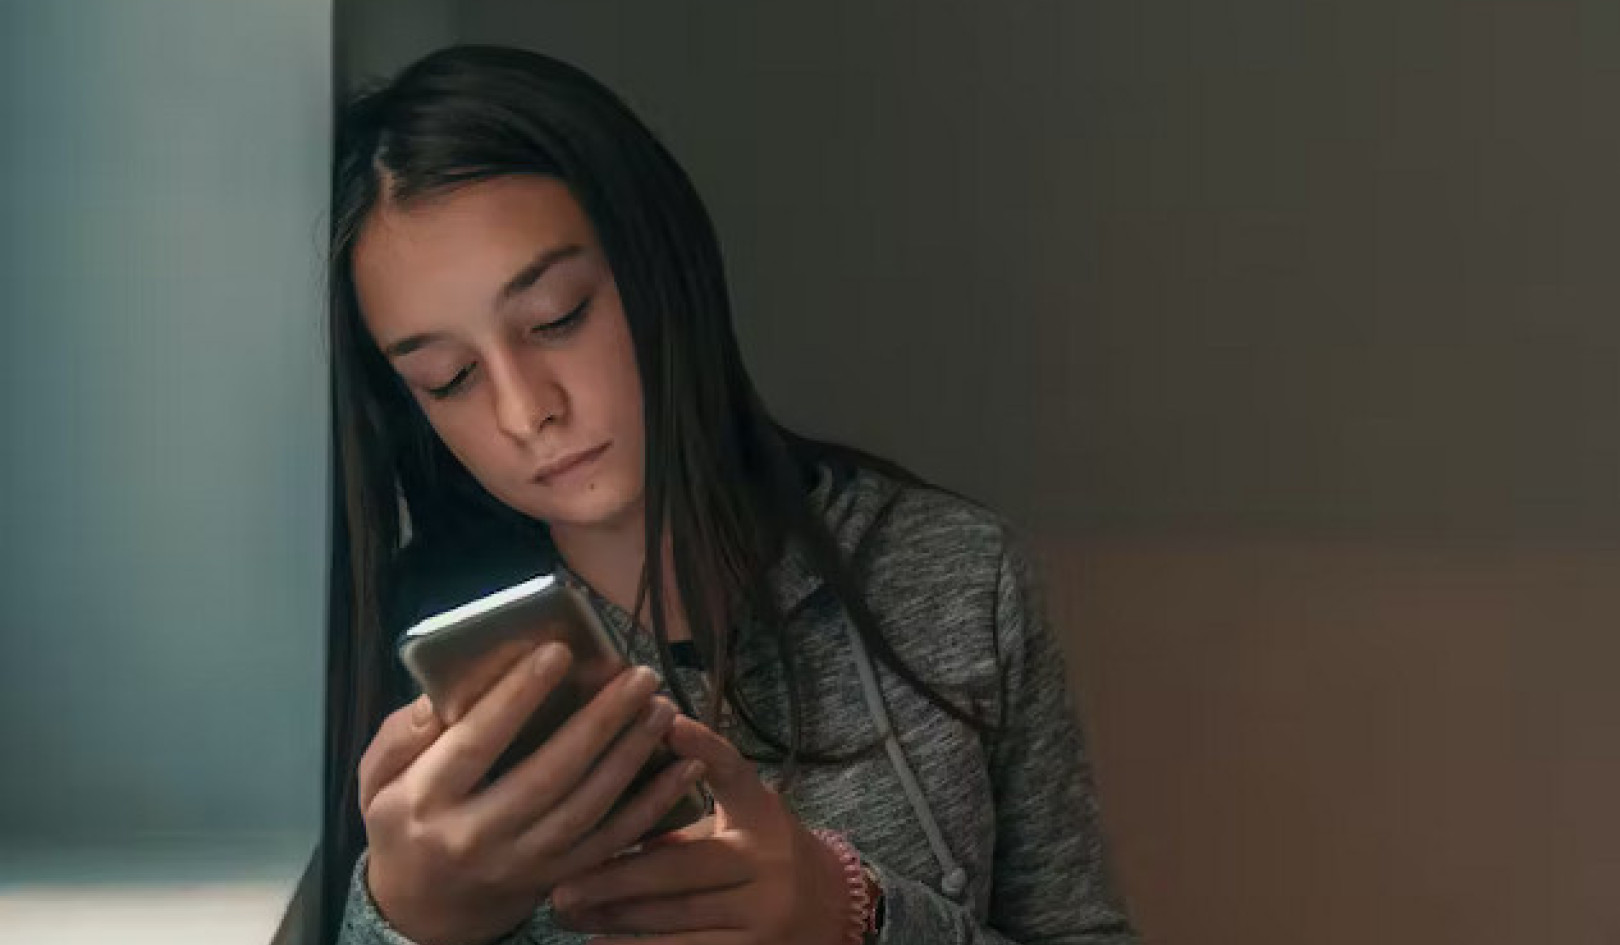 Navegando por el campo minado digital: por qué los jóvenes necesitan un apoyo sólido contra los daños sexuales en línea